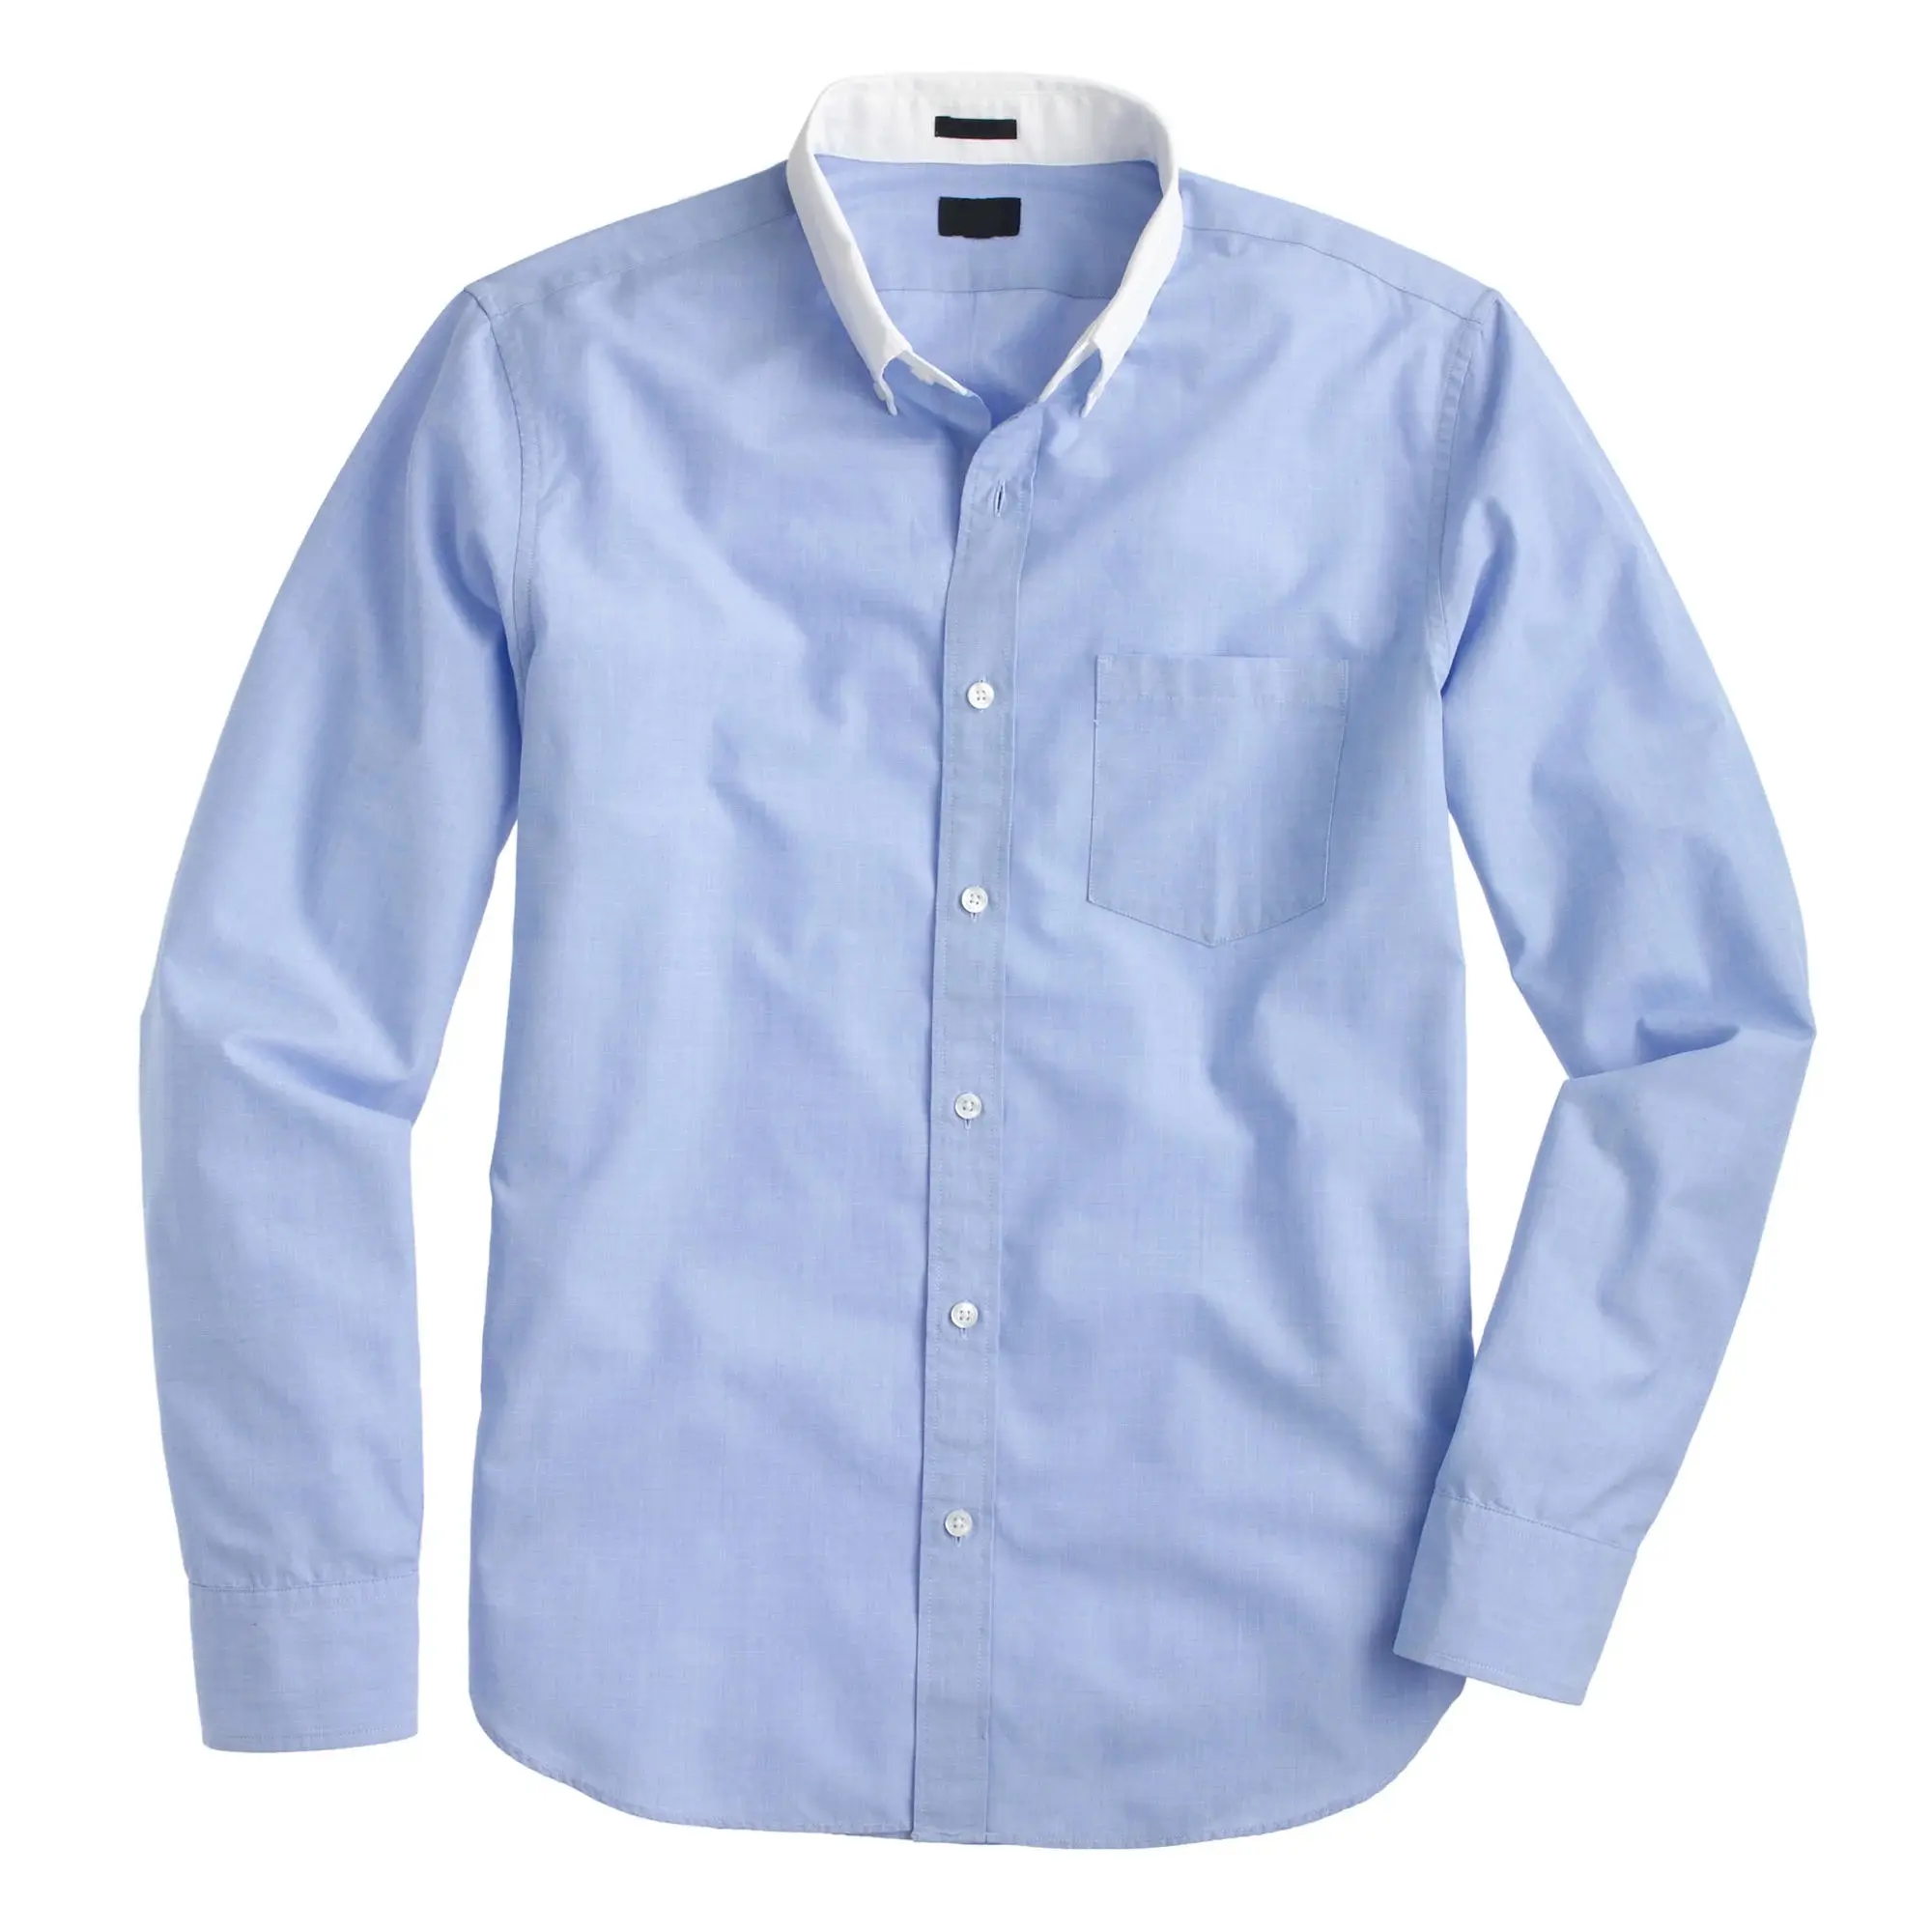 Camisa de cuello francés y puños para hombre, ropa Formal de oficina y trabajo, color azul cielo, blanco